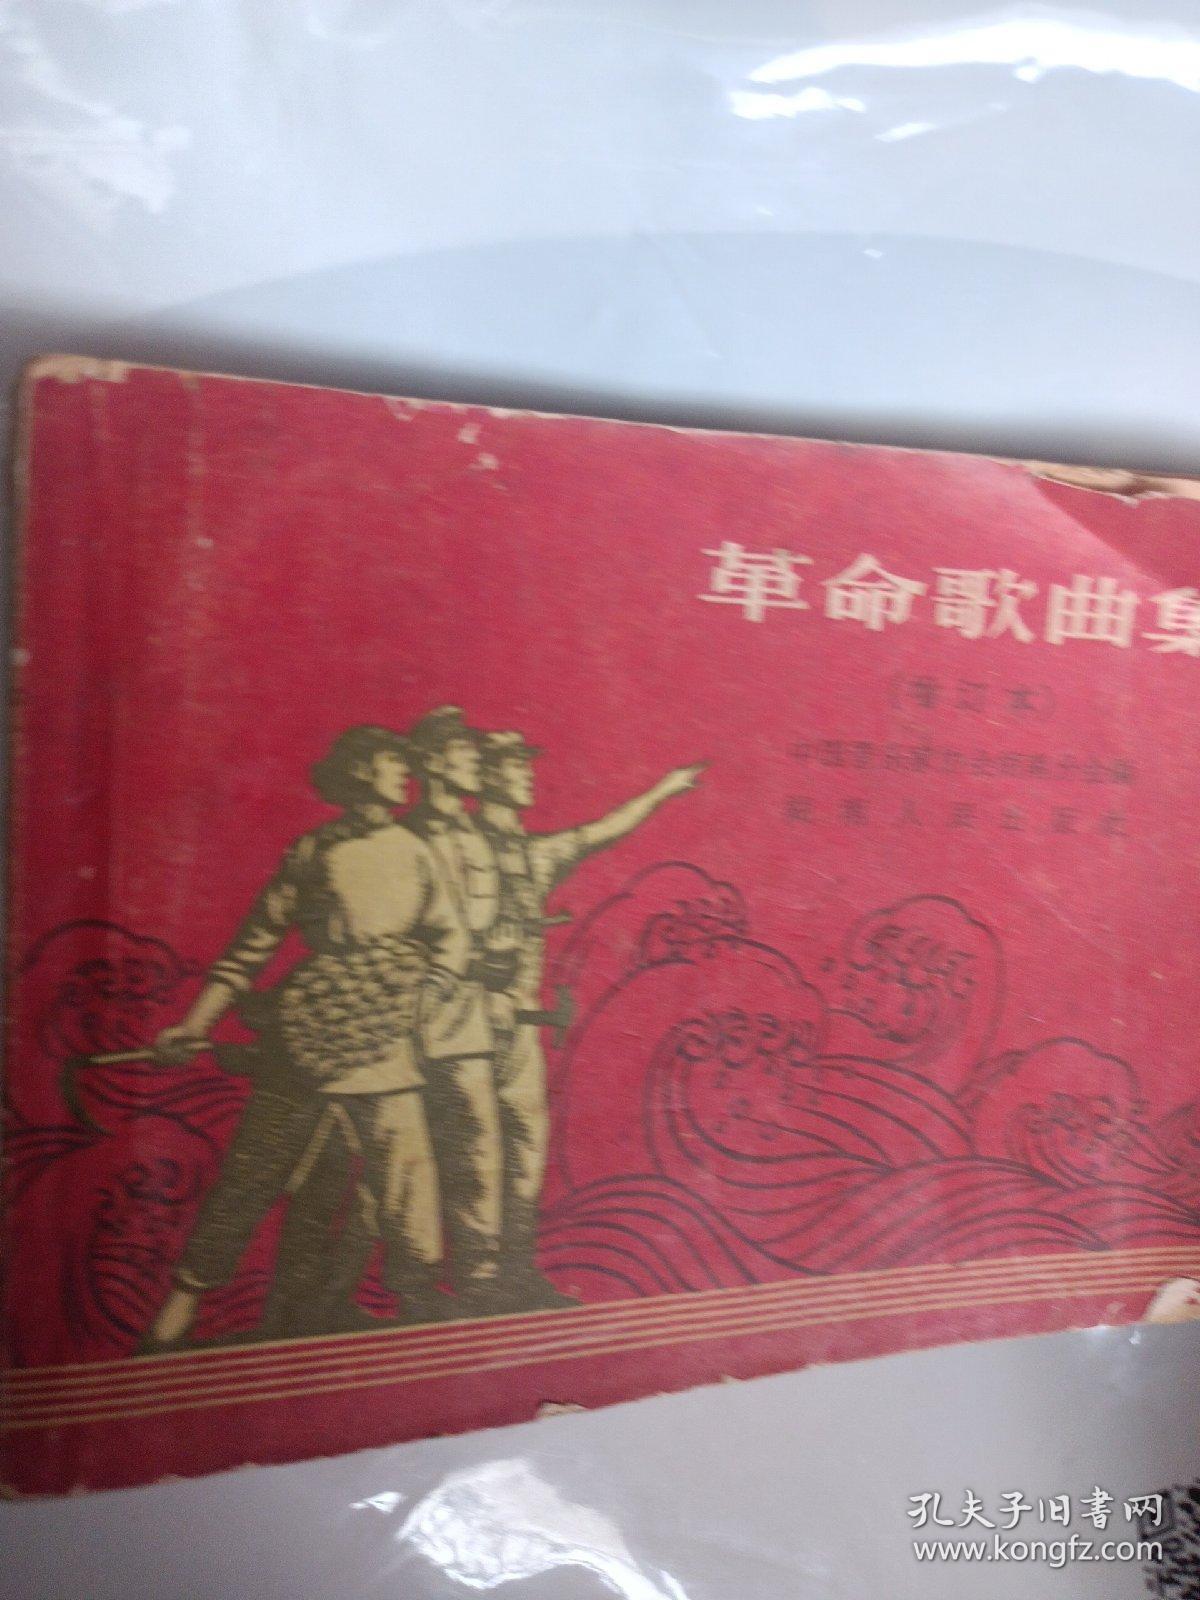 革命歌曲集 增订本 红色革命歌曲选 湖南人民出版社1964年长沙 低价一元起拍怀旧老版本